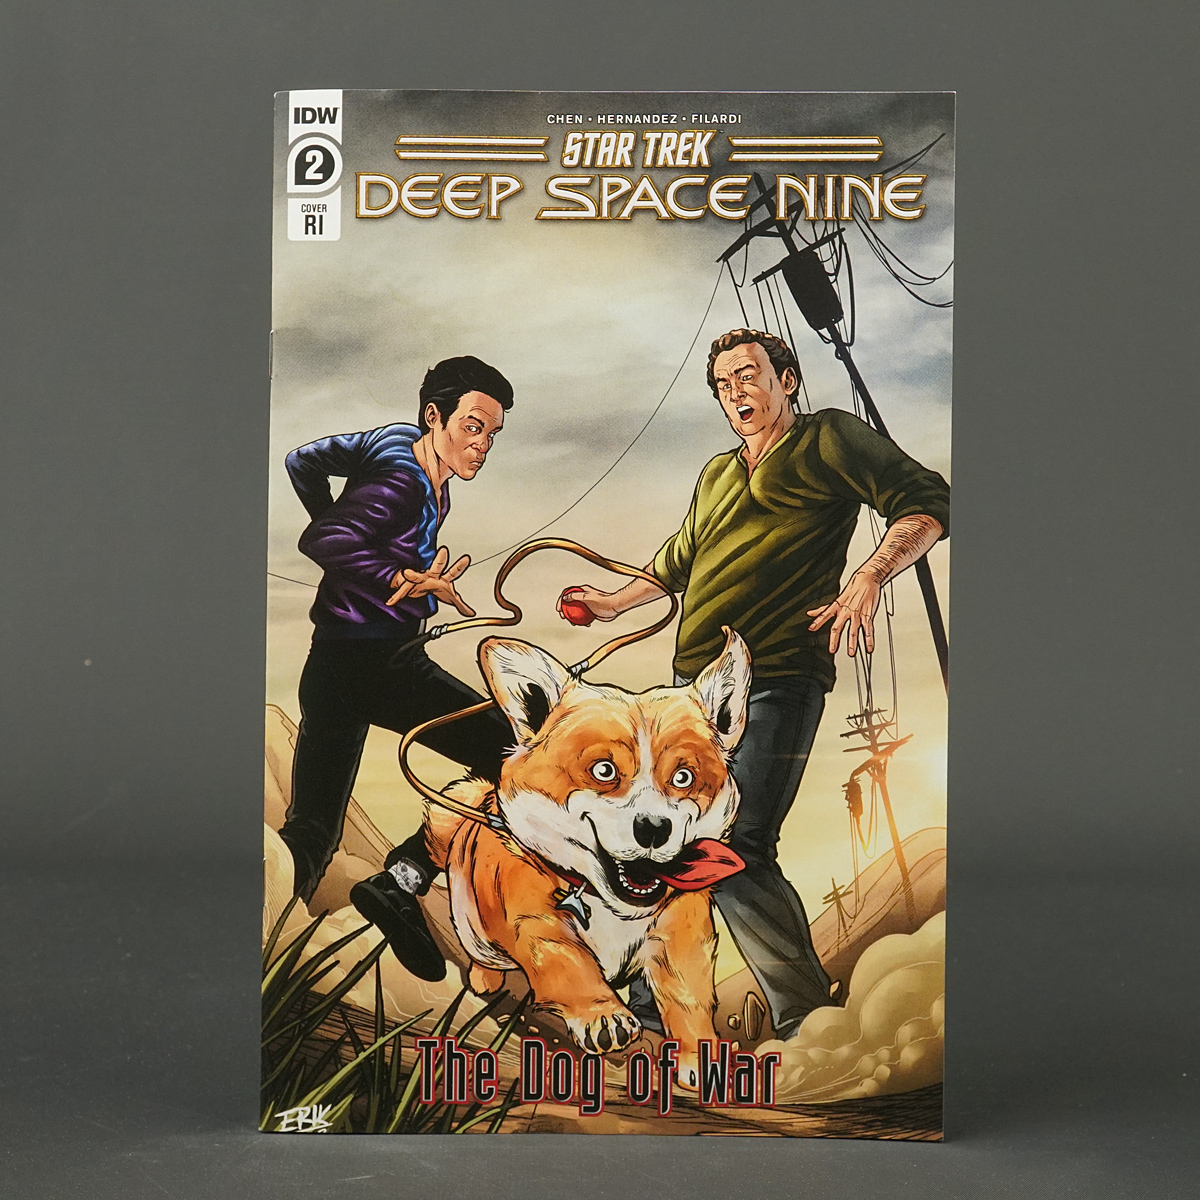 Star Trek Deep Space Nine DOG WAR #2 Cvr E RI 1:25 IDW Comics FEB231501 2E 2RI